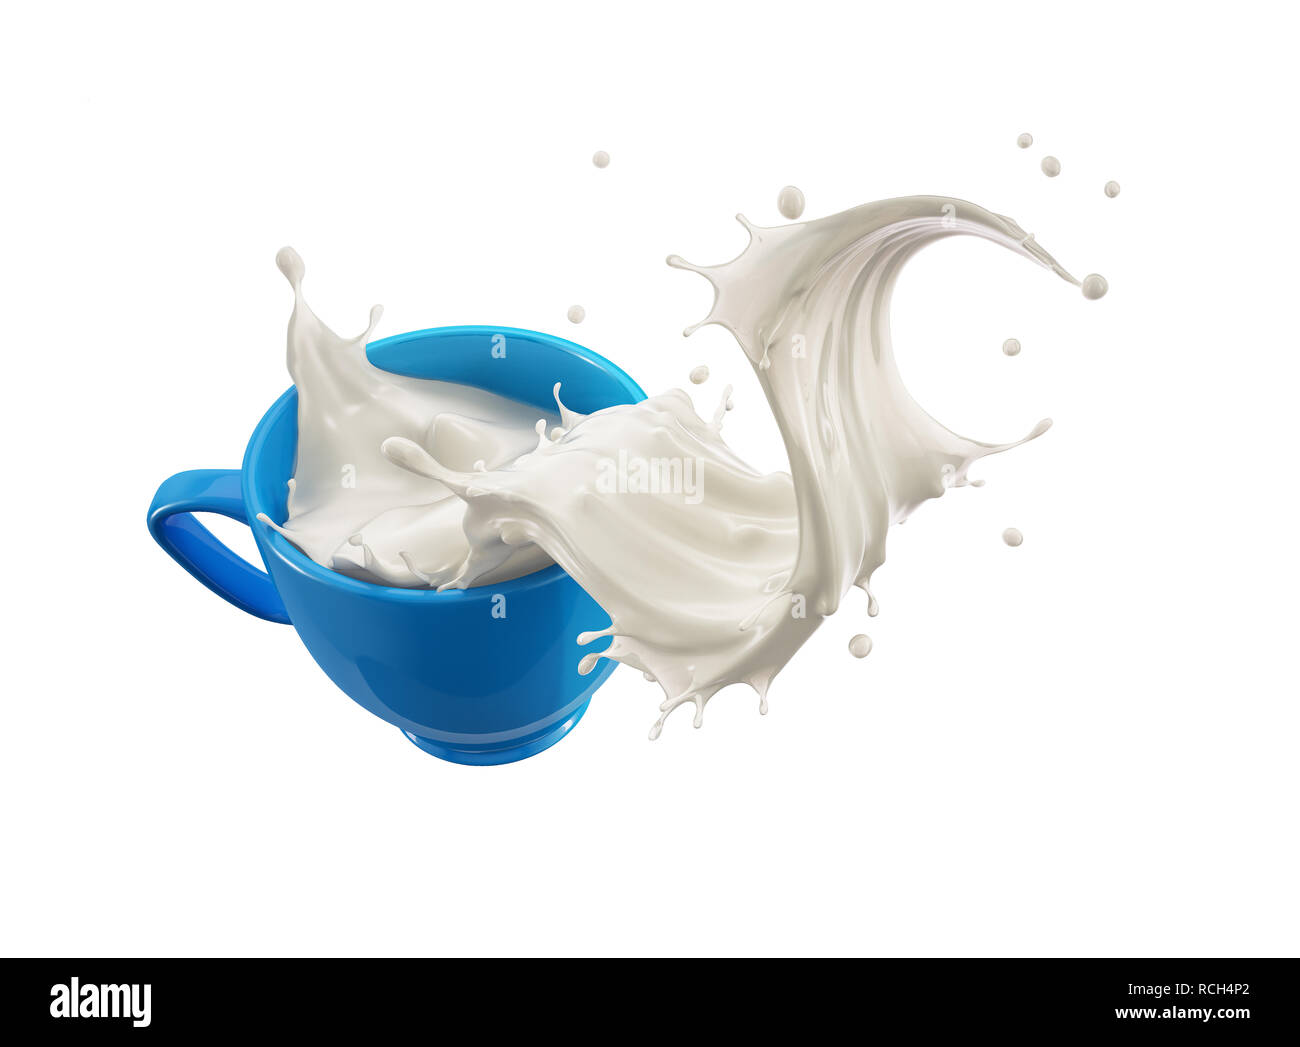 Blue cup la tazza con il latte splash wave. Isolato su sfondo bianco. Percorso di clipping incluso. Foto Stock